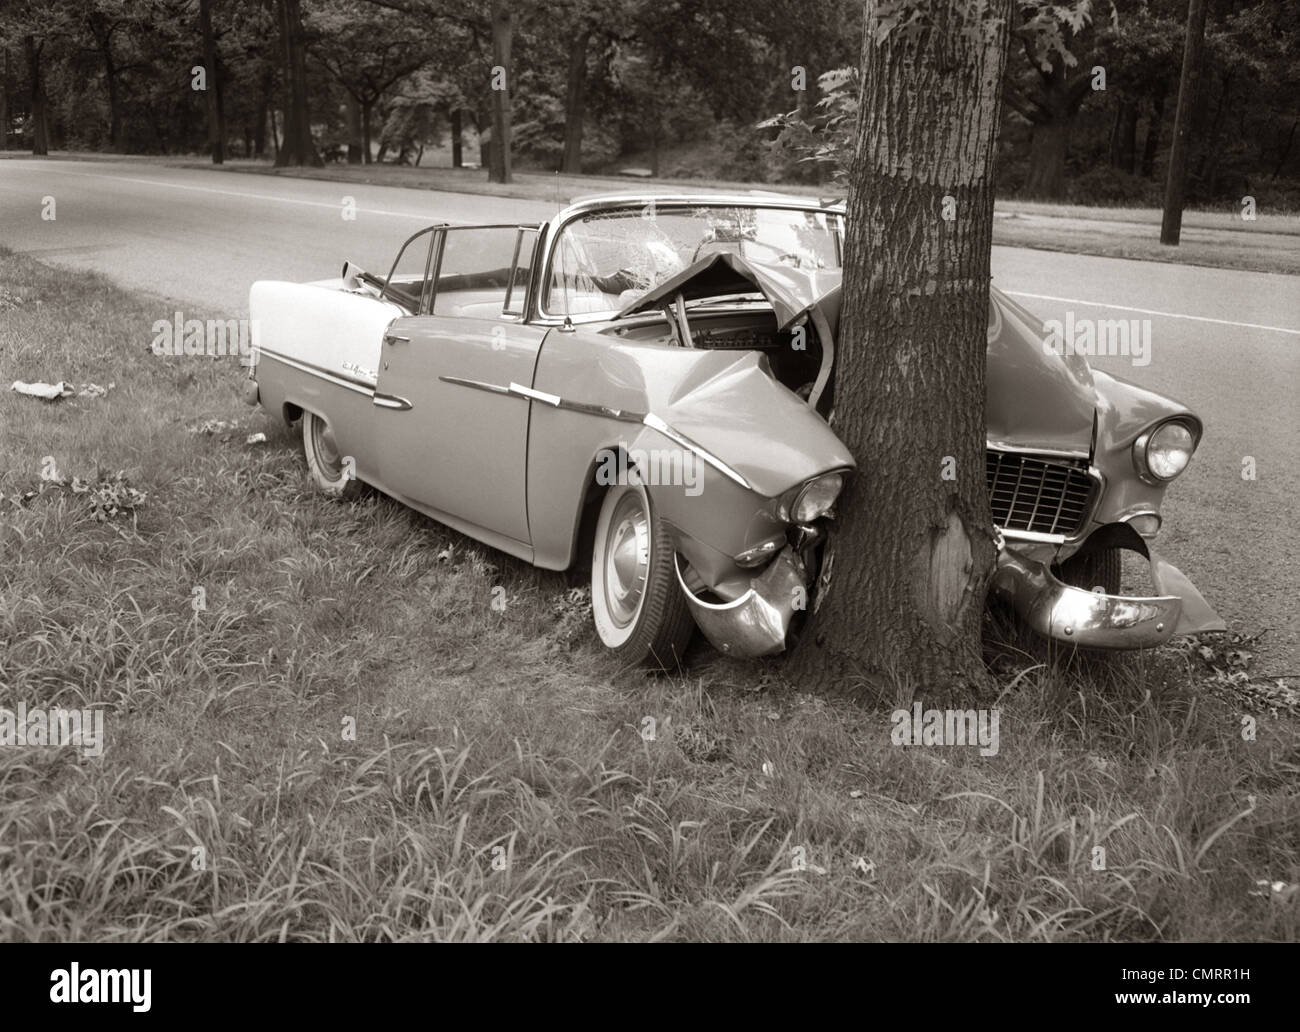 1950-tête convertible s'est écrasé SUR UN ARBRE EN PISCINE Banque D'Images